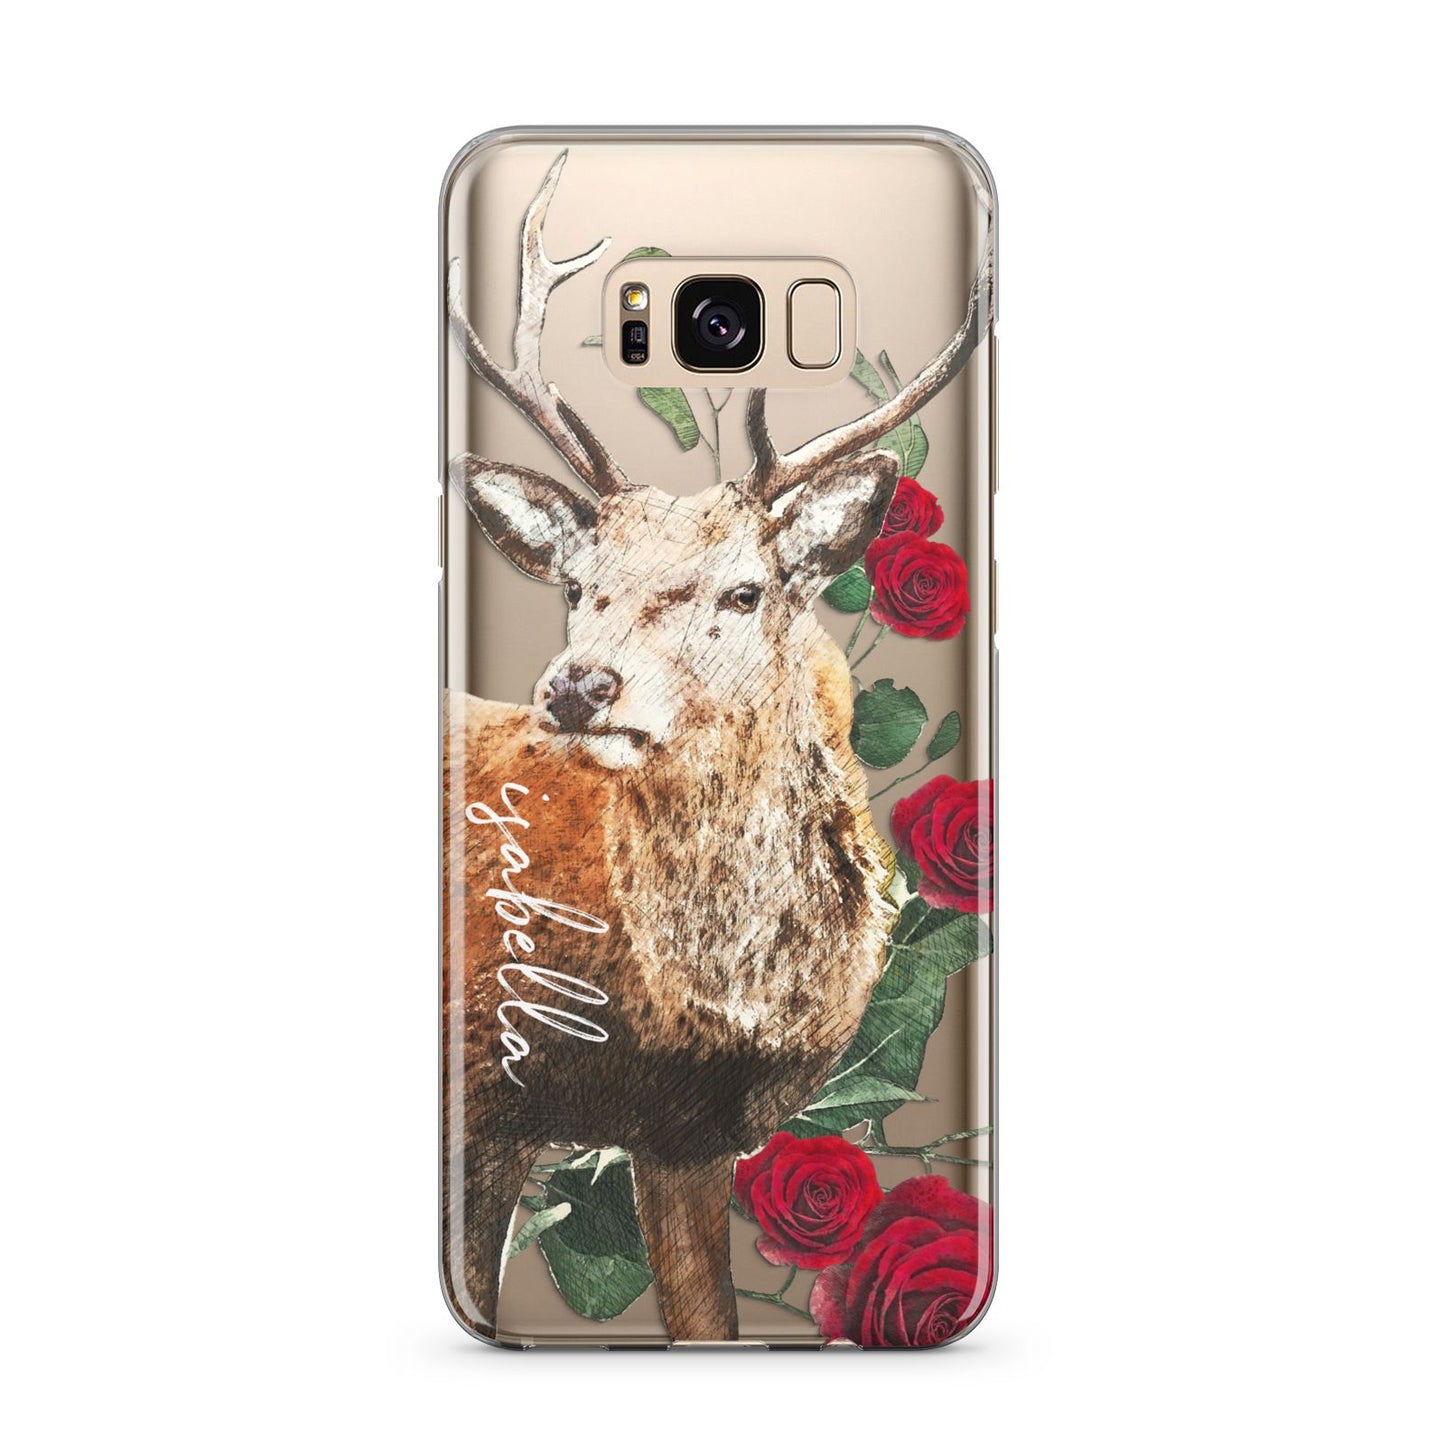 Personalised Deer Name Samsung Galaxy S8 Plus Case